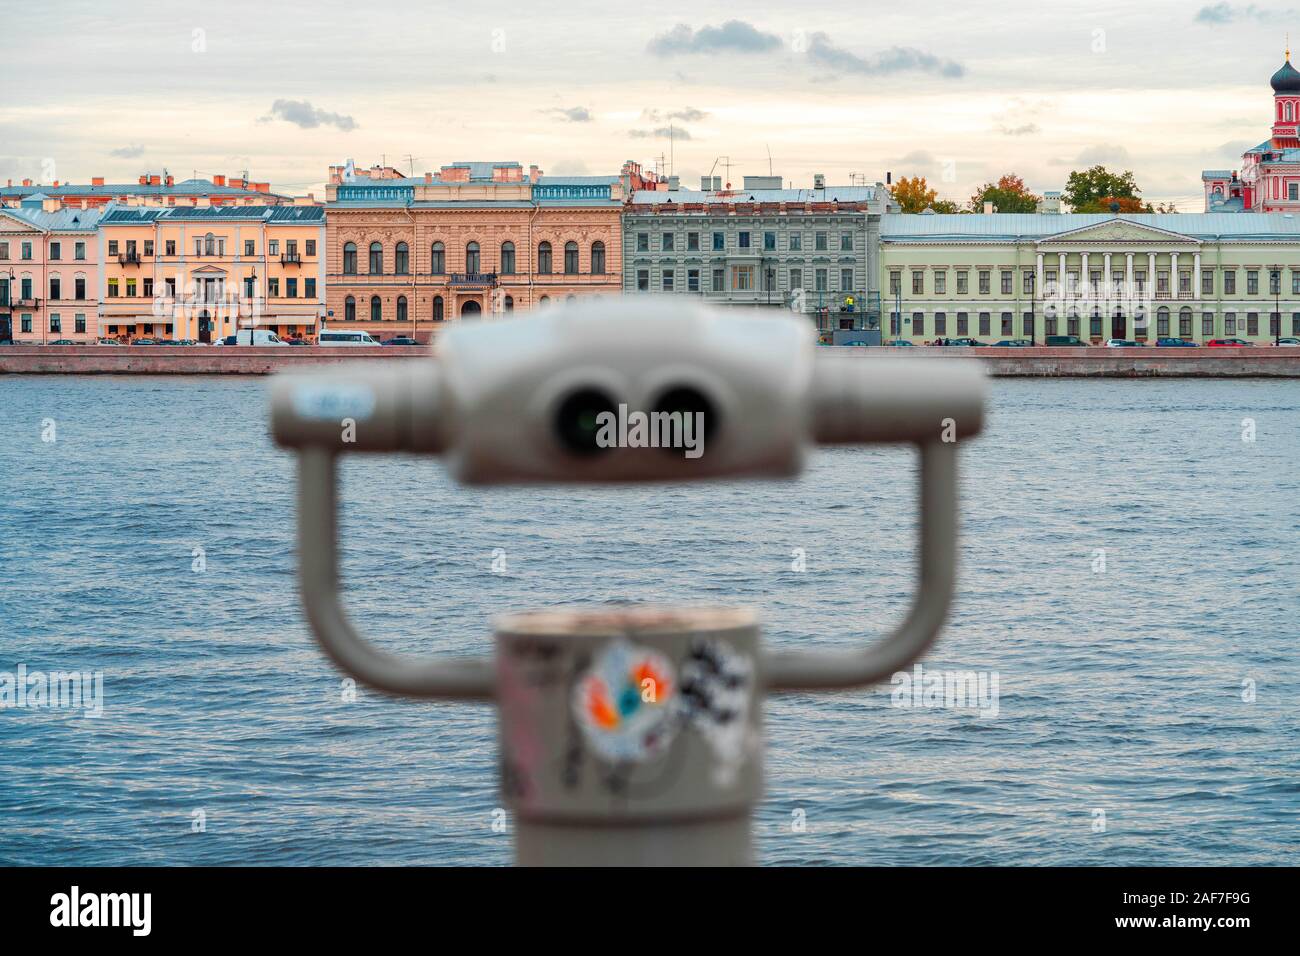 Touristische Fernglas mit Blick auf einen Fluss und Sankt Petersburg. Ferngläser werden zur Vordergrund- und verschwommen. Besichtigungen und Reisen. Stockfoto